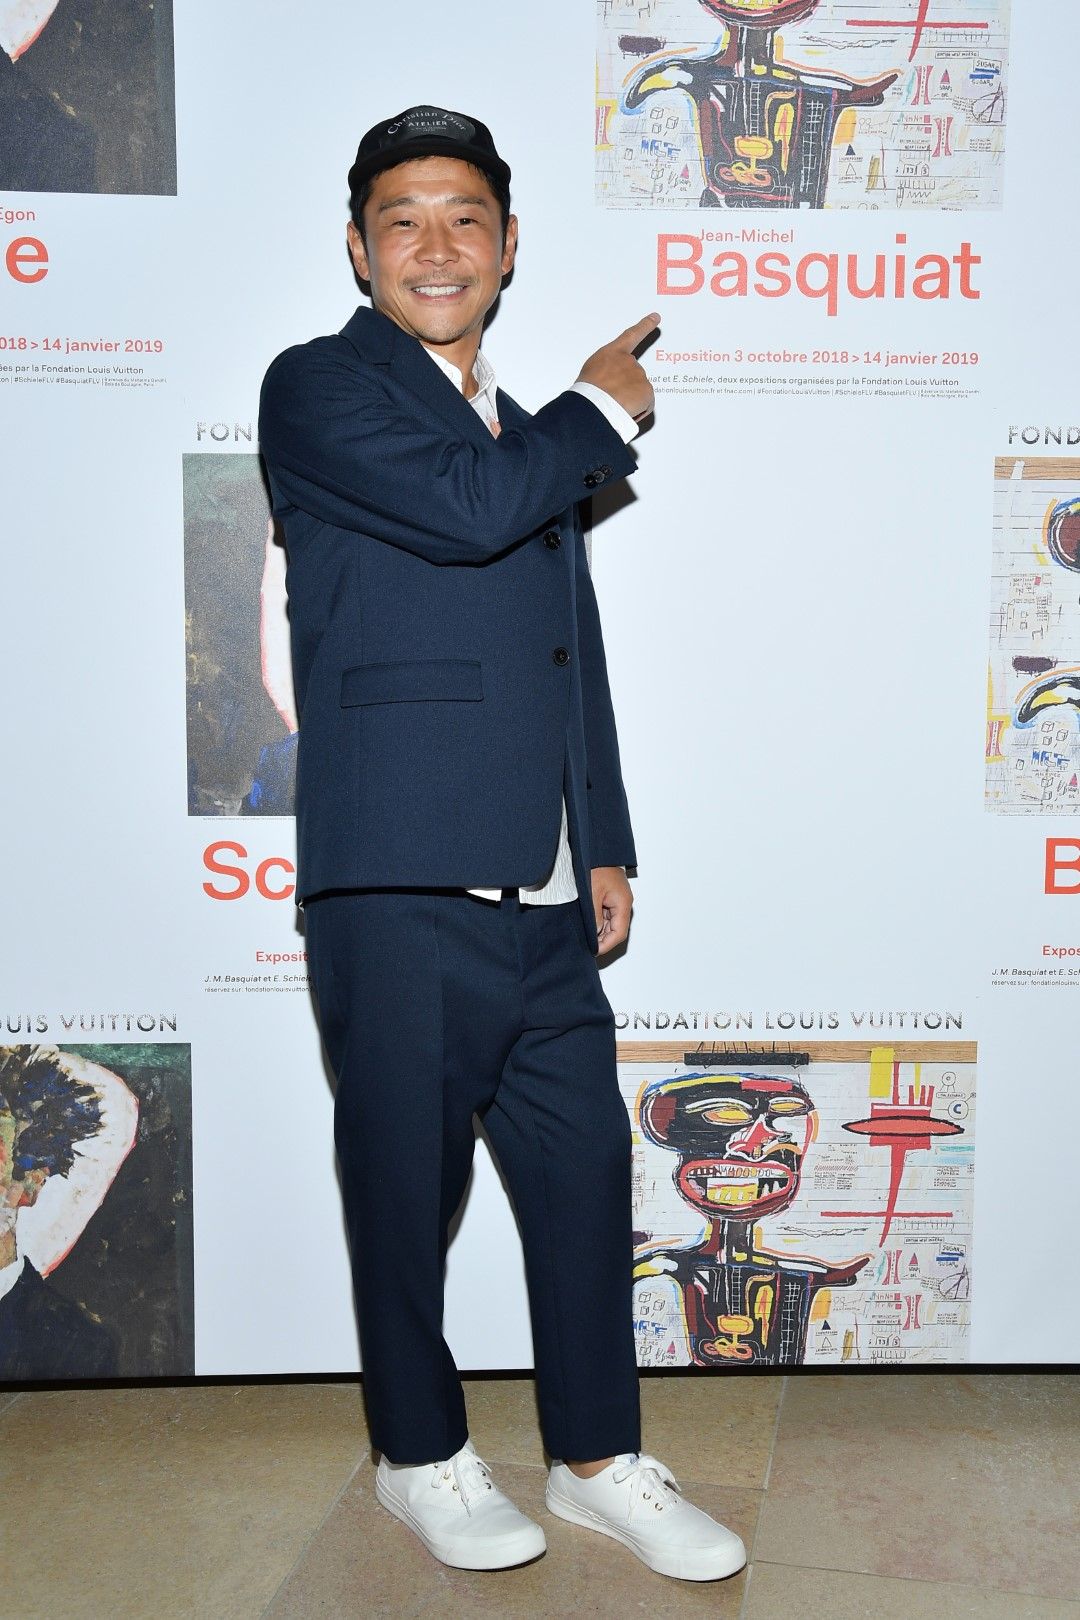 Юсаку Маедзава отказва да посочи точна цена за пътуването, но казва, че е повече от 110-те милиона долара, която плати за картина на Жан-Мишел Баския. Снимката е от 1 октомври 2018 г. по време на изложба на Баския, която японецът посети